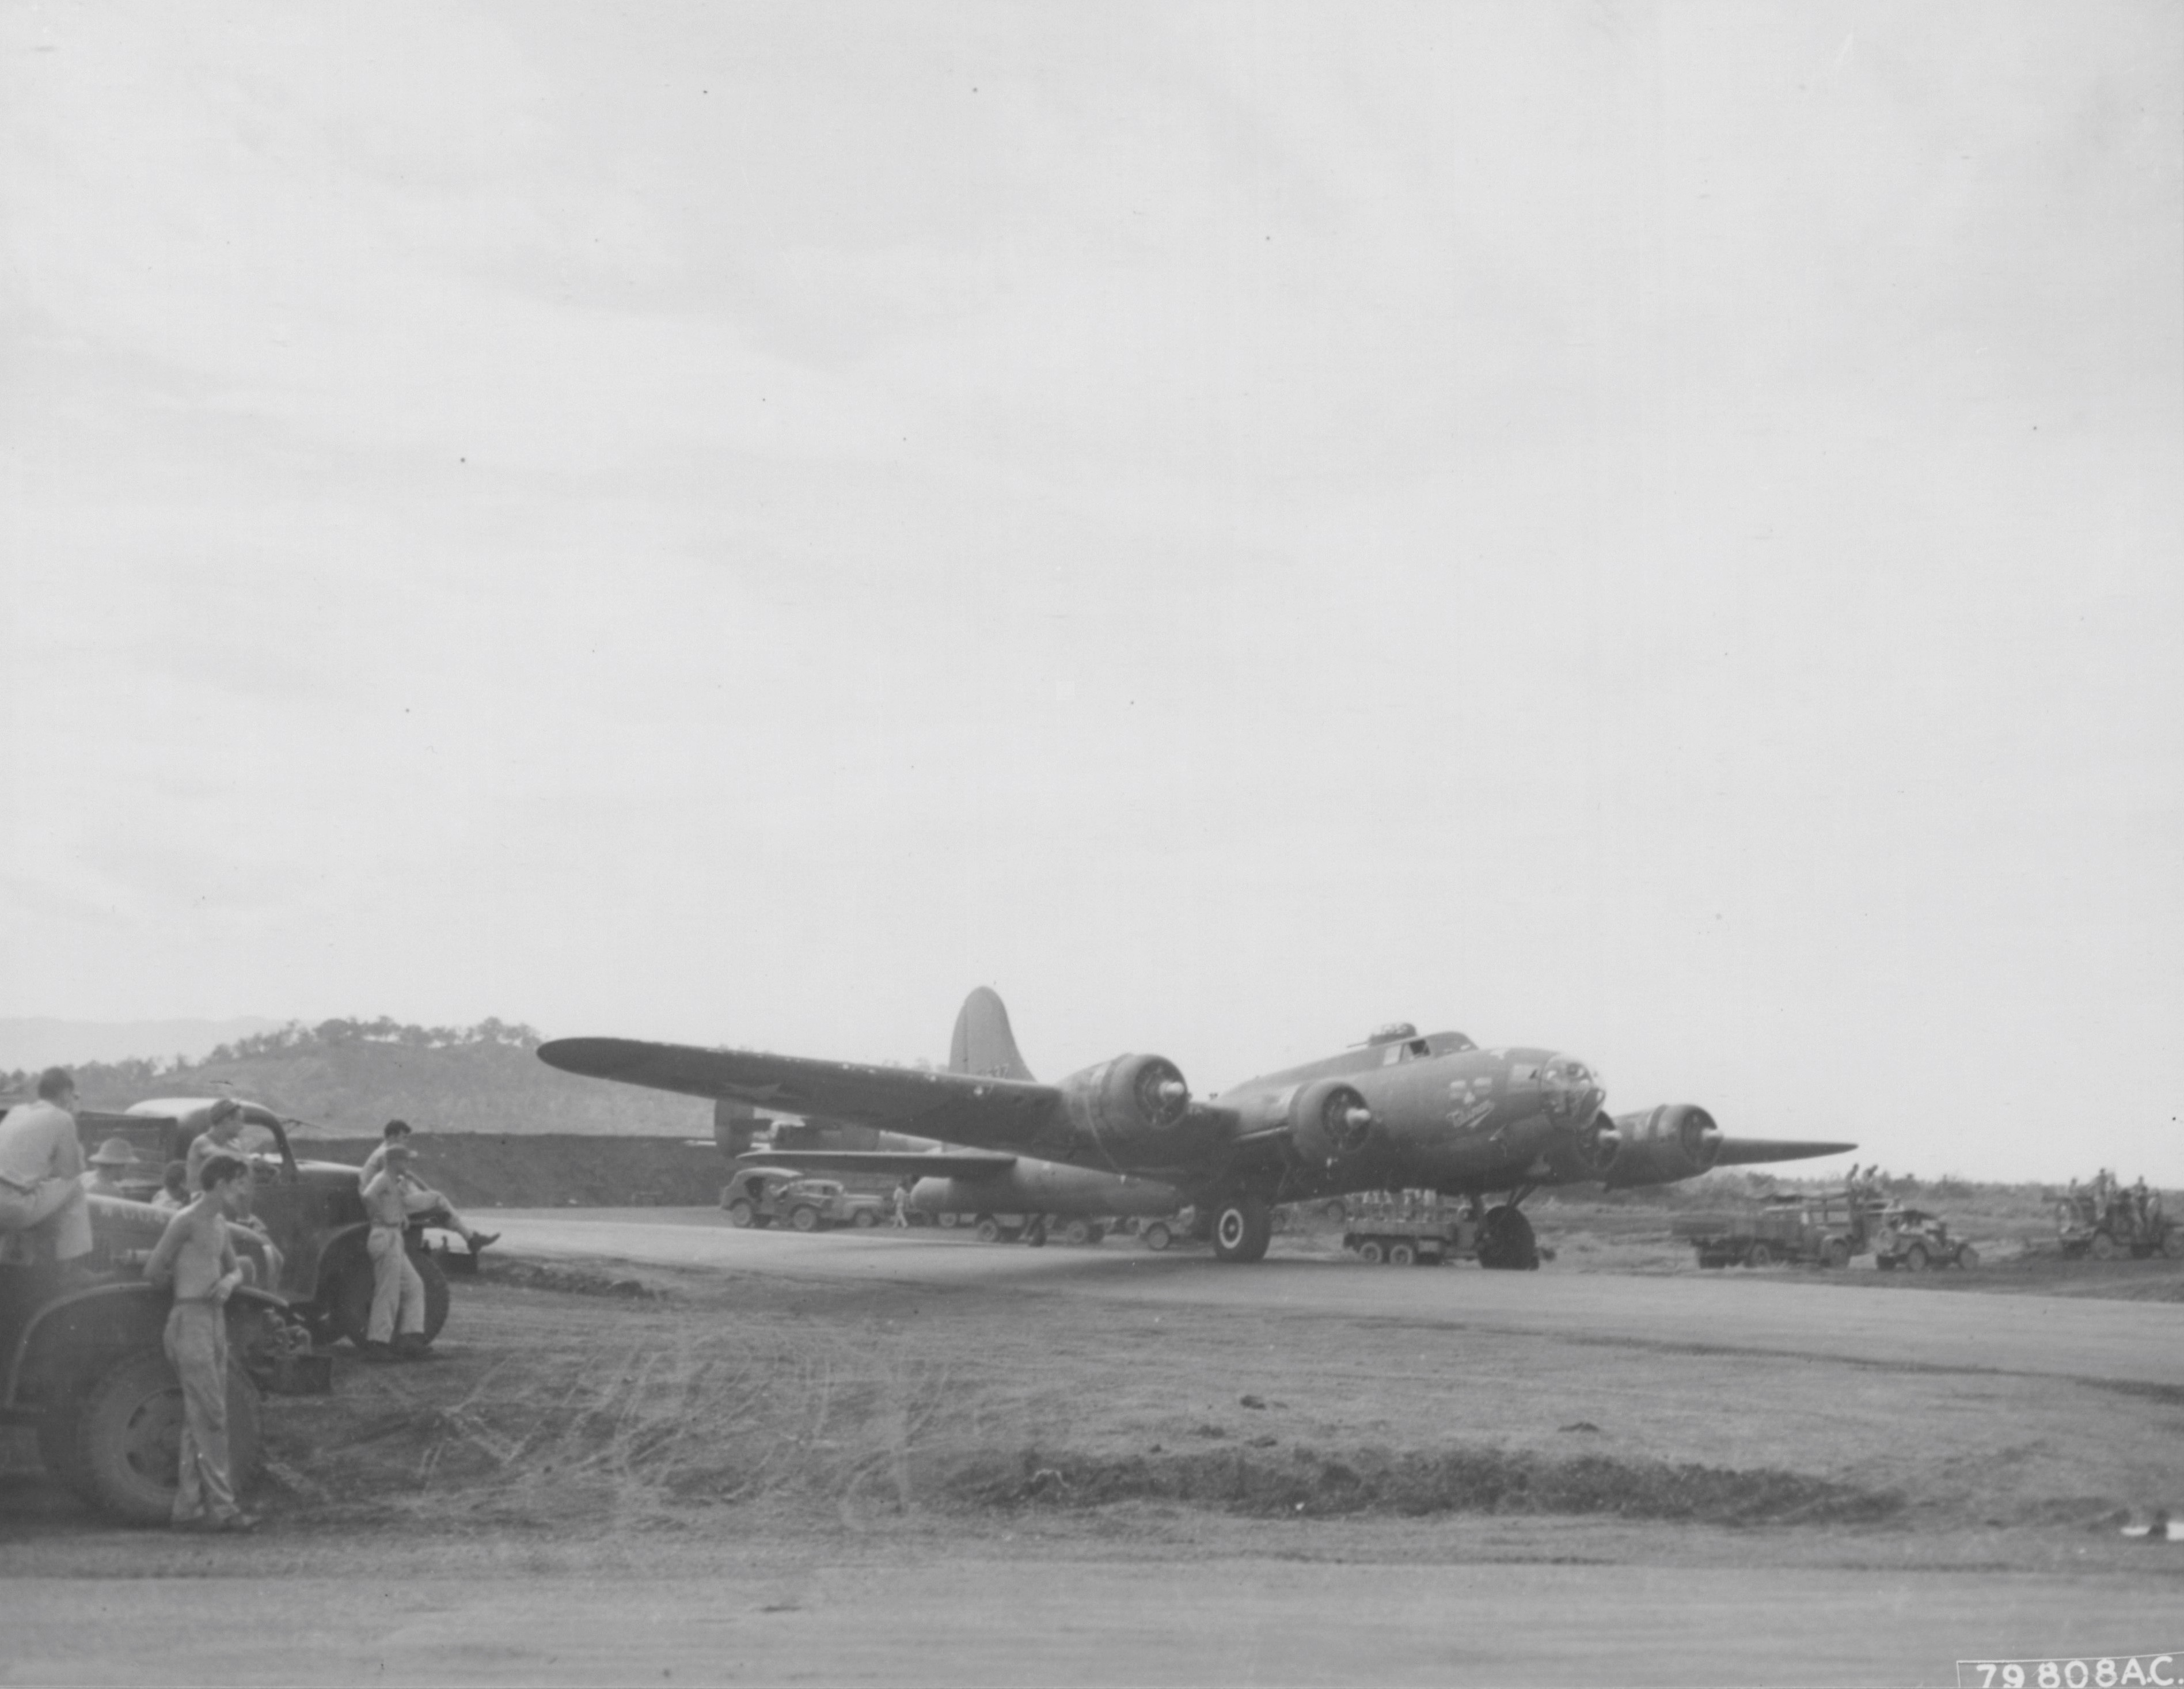 B-17 "Talisman"